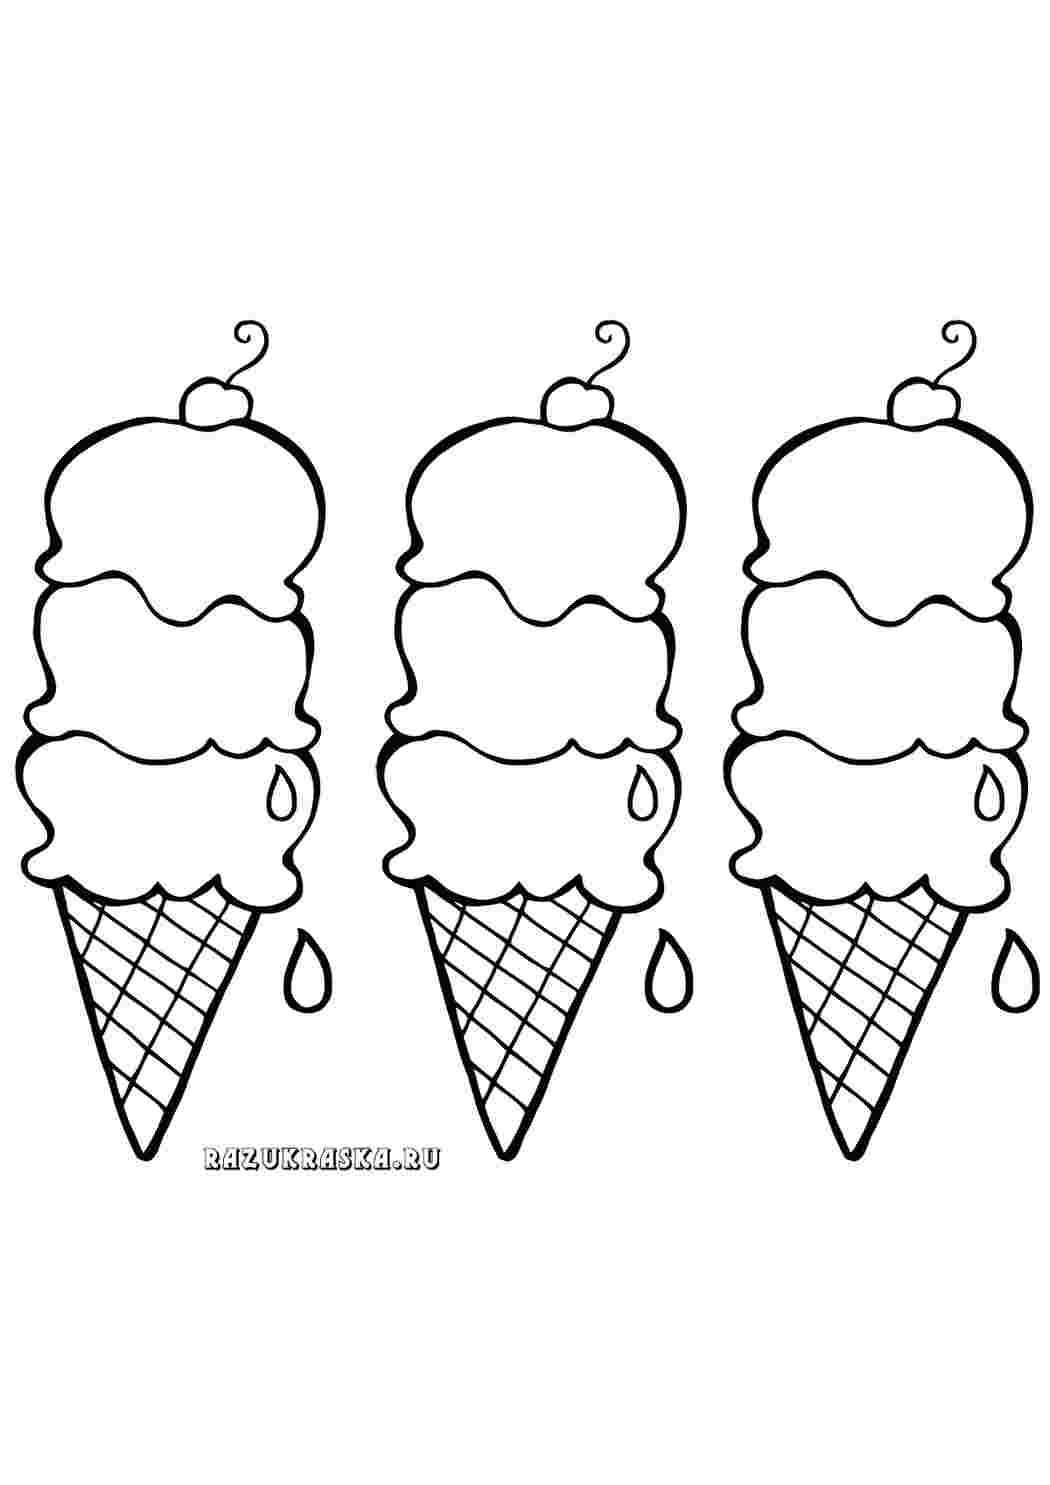 Раскраска мороженки. Раскраска мороженое. Мороженое раскраска для детей. Картинка мороженое раскраска. Сладости раскраска для детей.